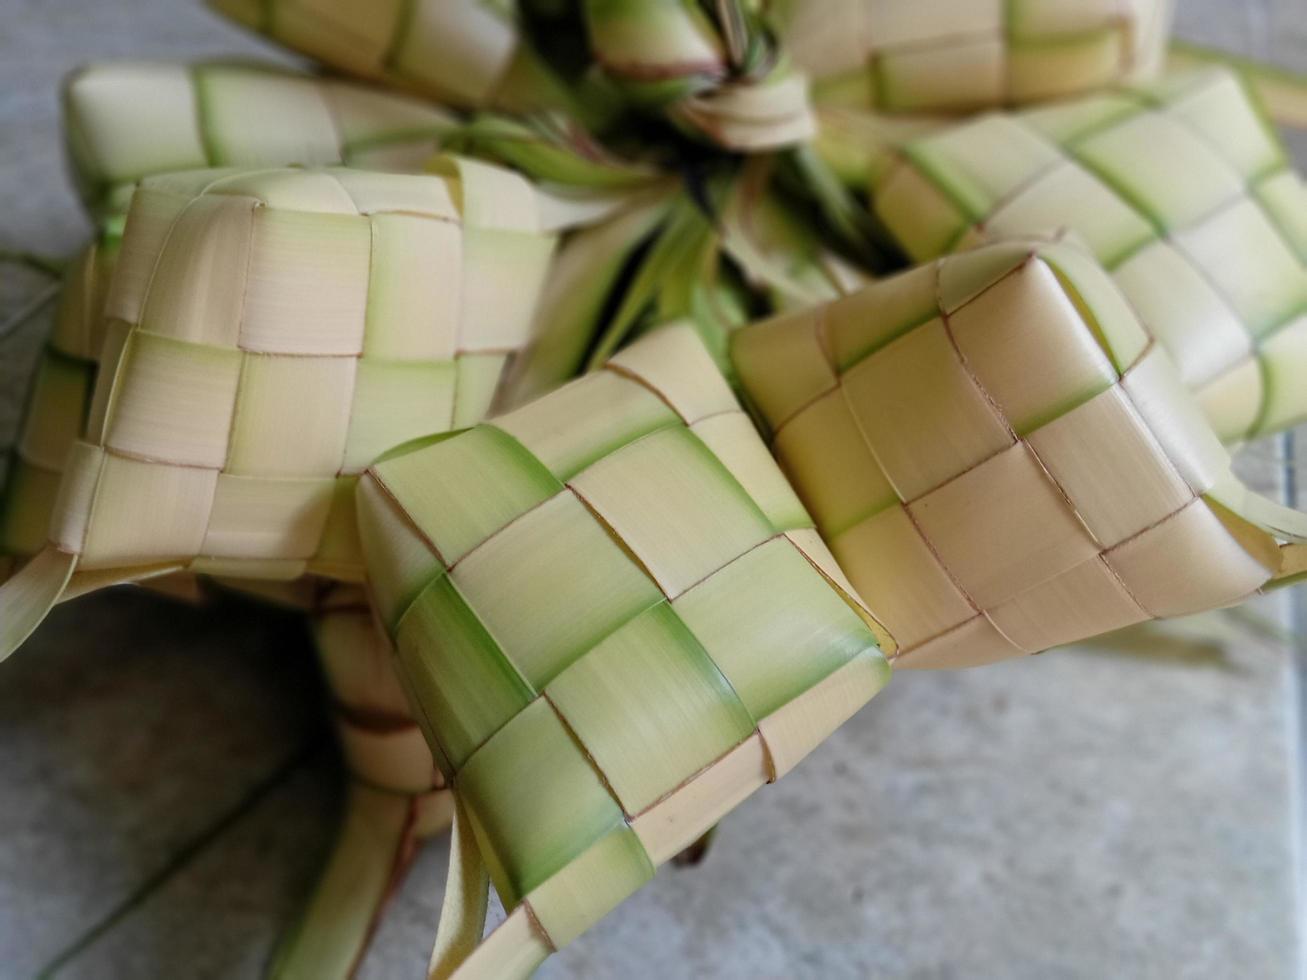 ketupat in Indonesië is een soort van manier van Koken rijst- door invoegen rijst- in een kokosnoot blad welke is vormig Leuk vinden een diamant. vervolgens gestoomd. heel beroemd in Indonesië. meestal verschijnt Aan eid al-fitr foto